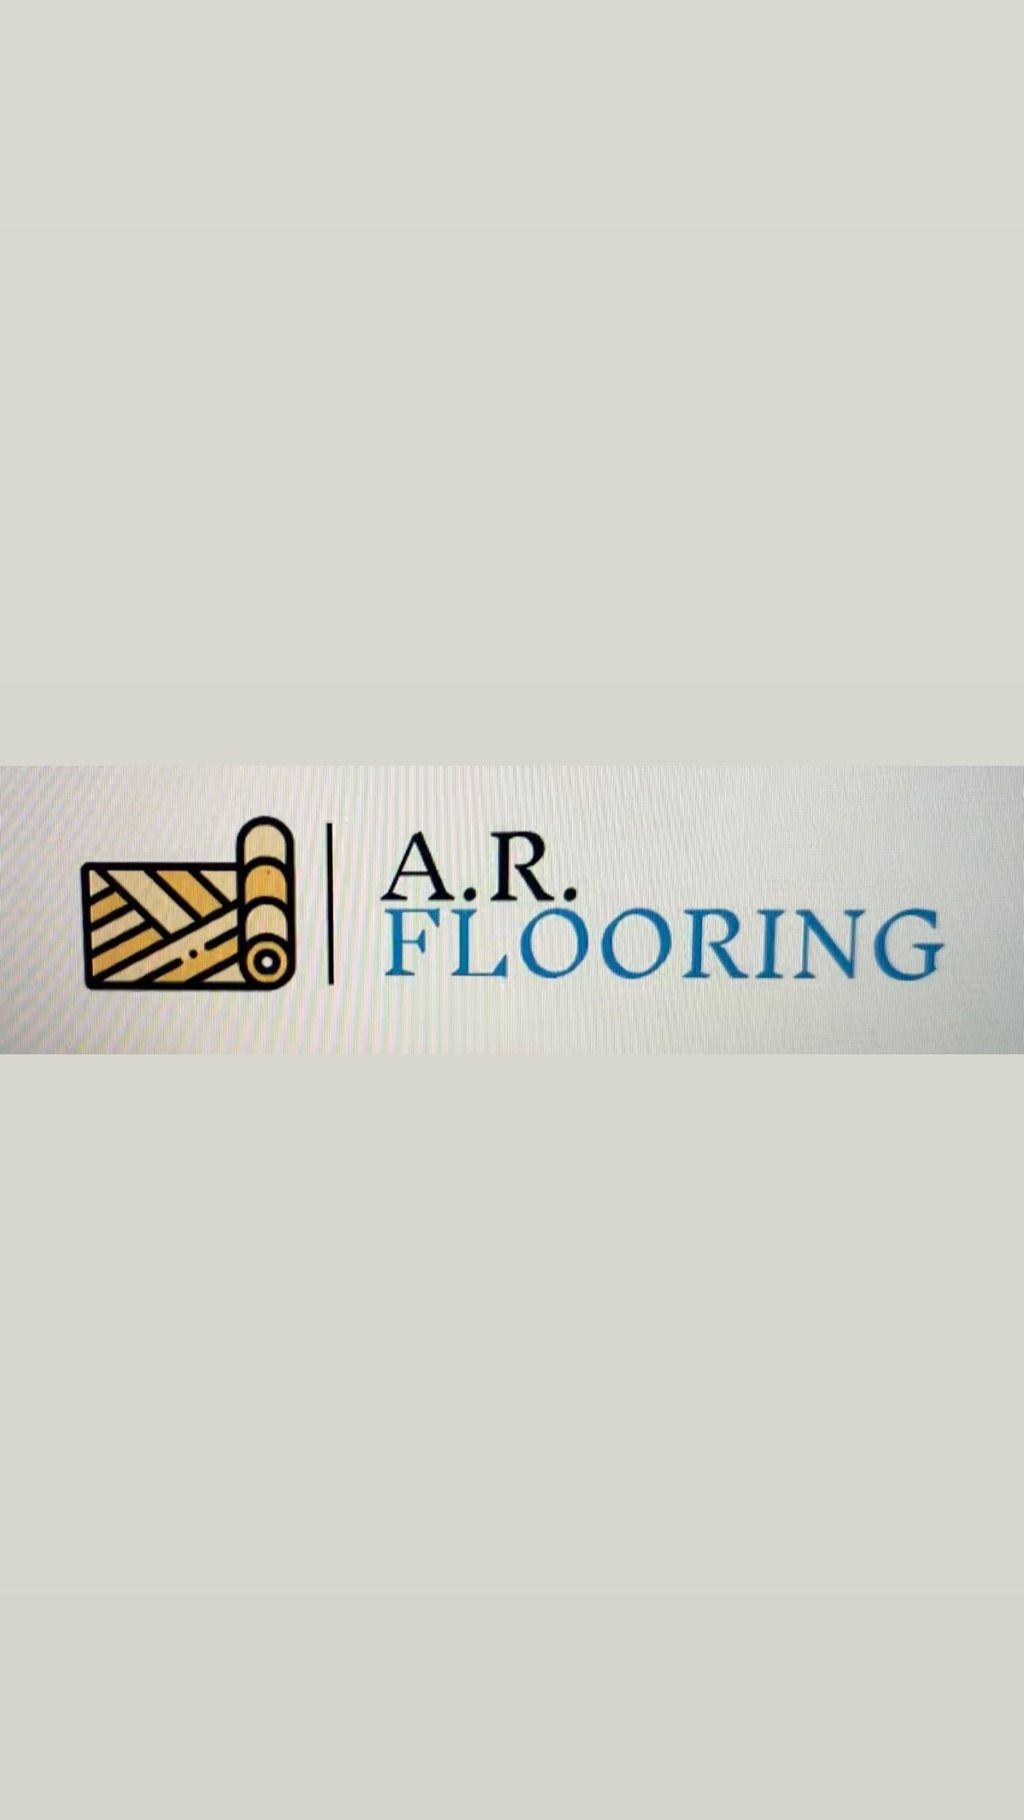 A.R FLOORING